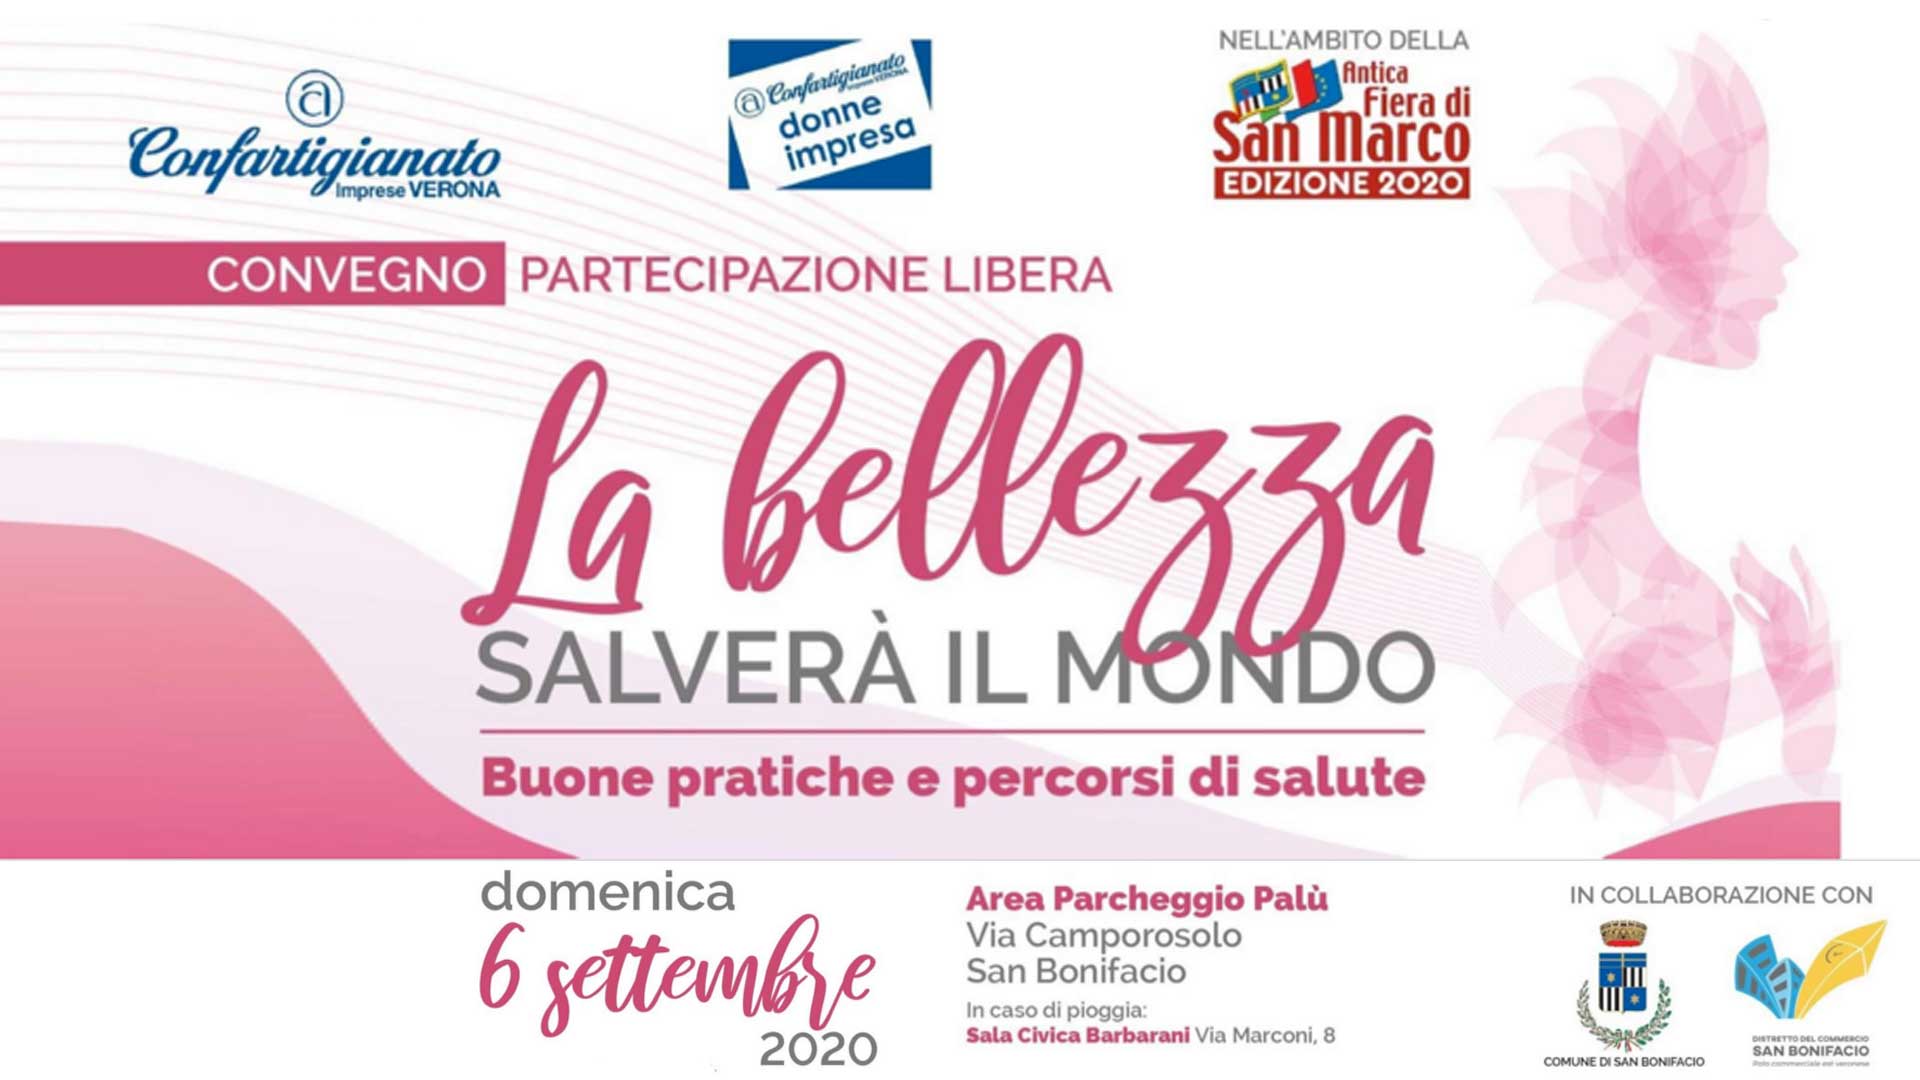 VERONA EST – "La bellezza salverà il mondo": il 6 settembre, convegno sulla salute alla Fiera di San Marco di San Bonifacio